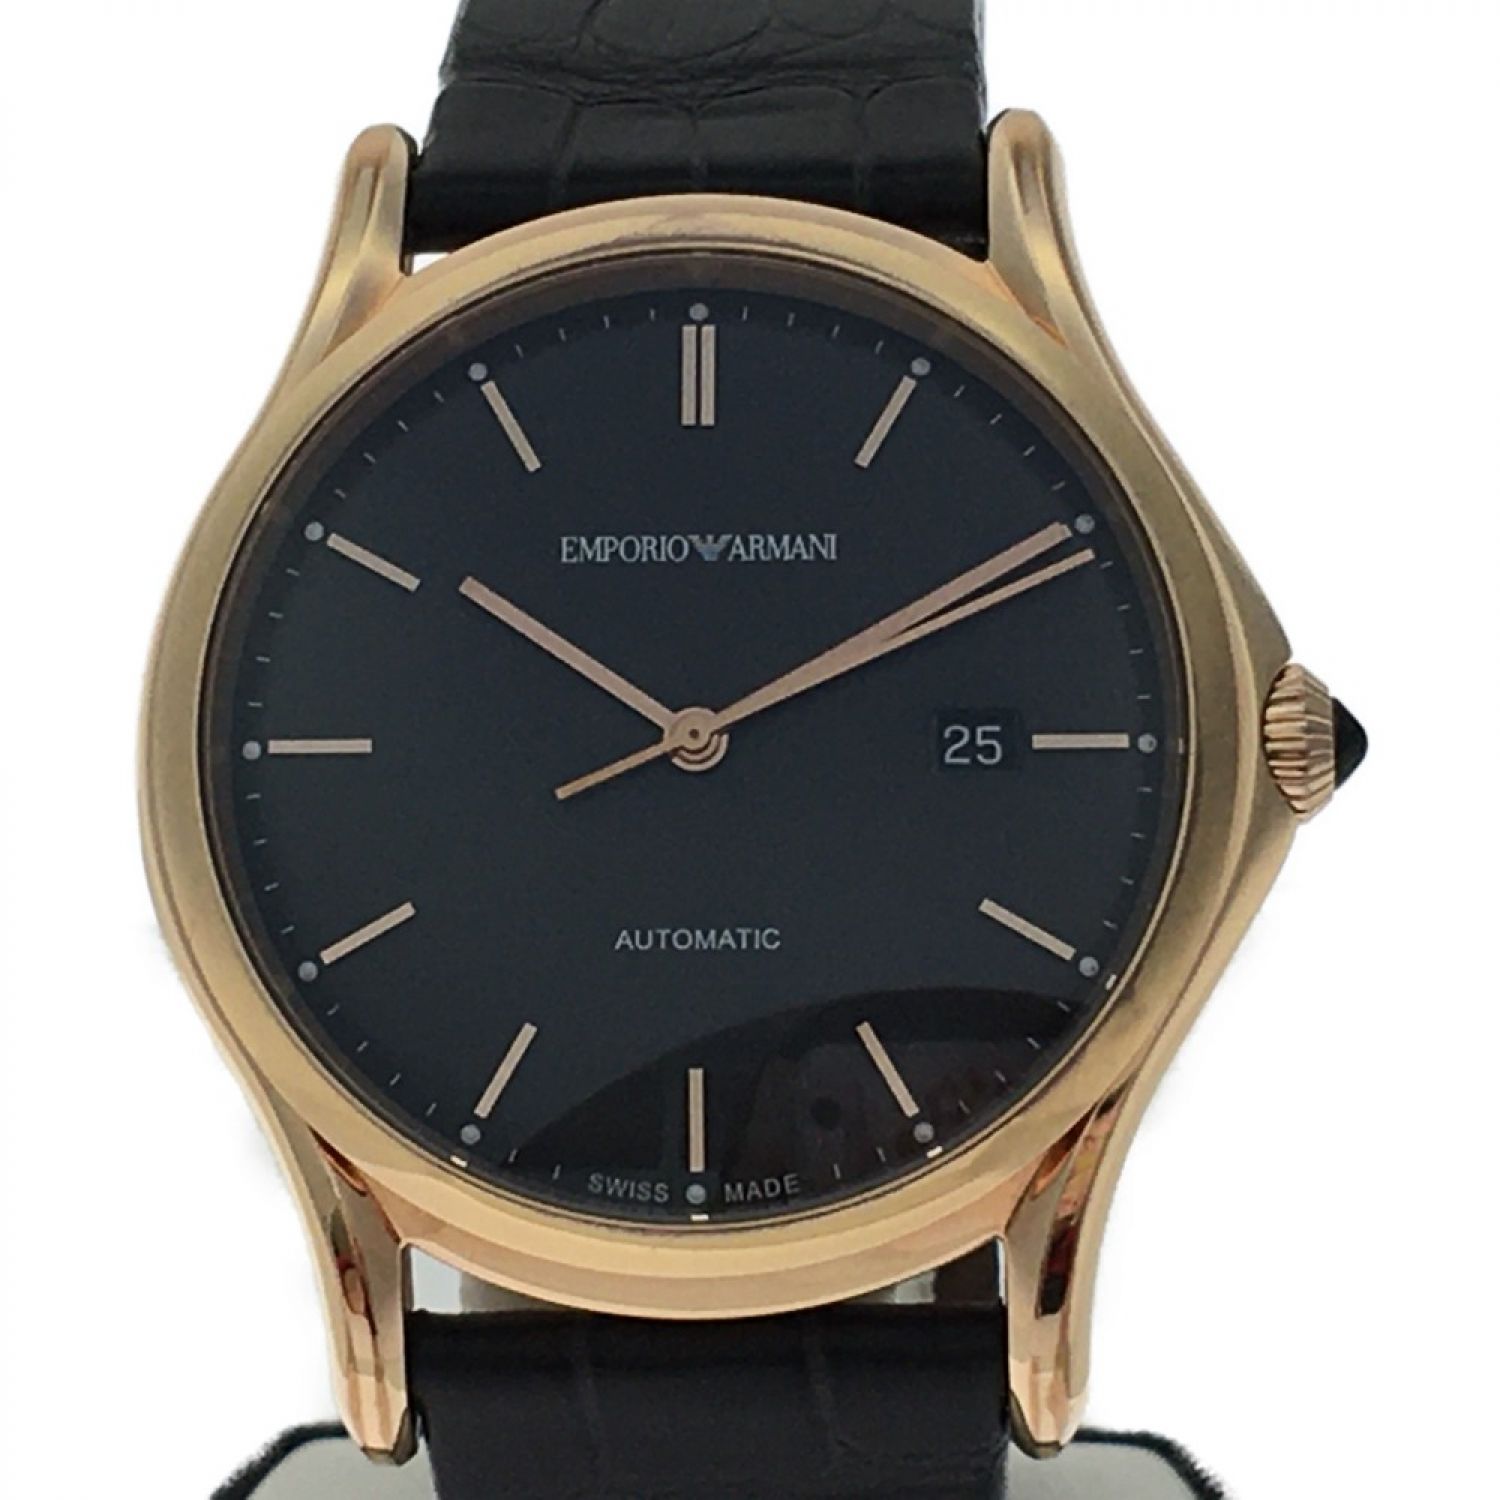 エンポリオ・アルマーニ Emporio Armani 腕時計 時計 ステンレススチール ARS-3610 自動巻き メンズ 1年保証